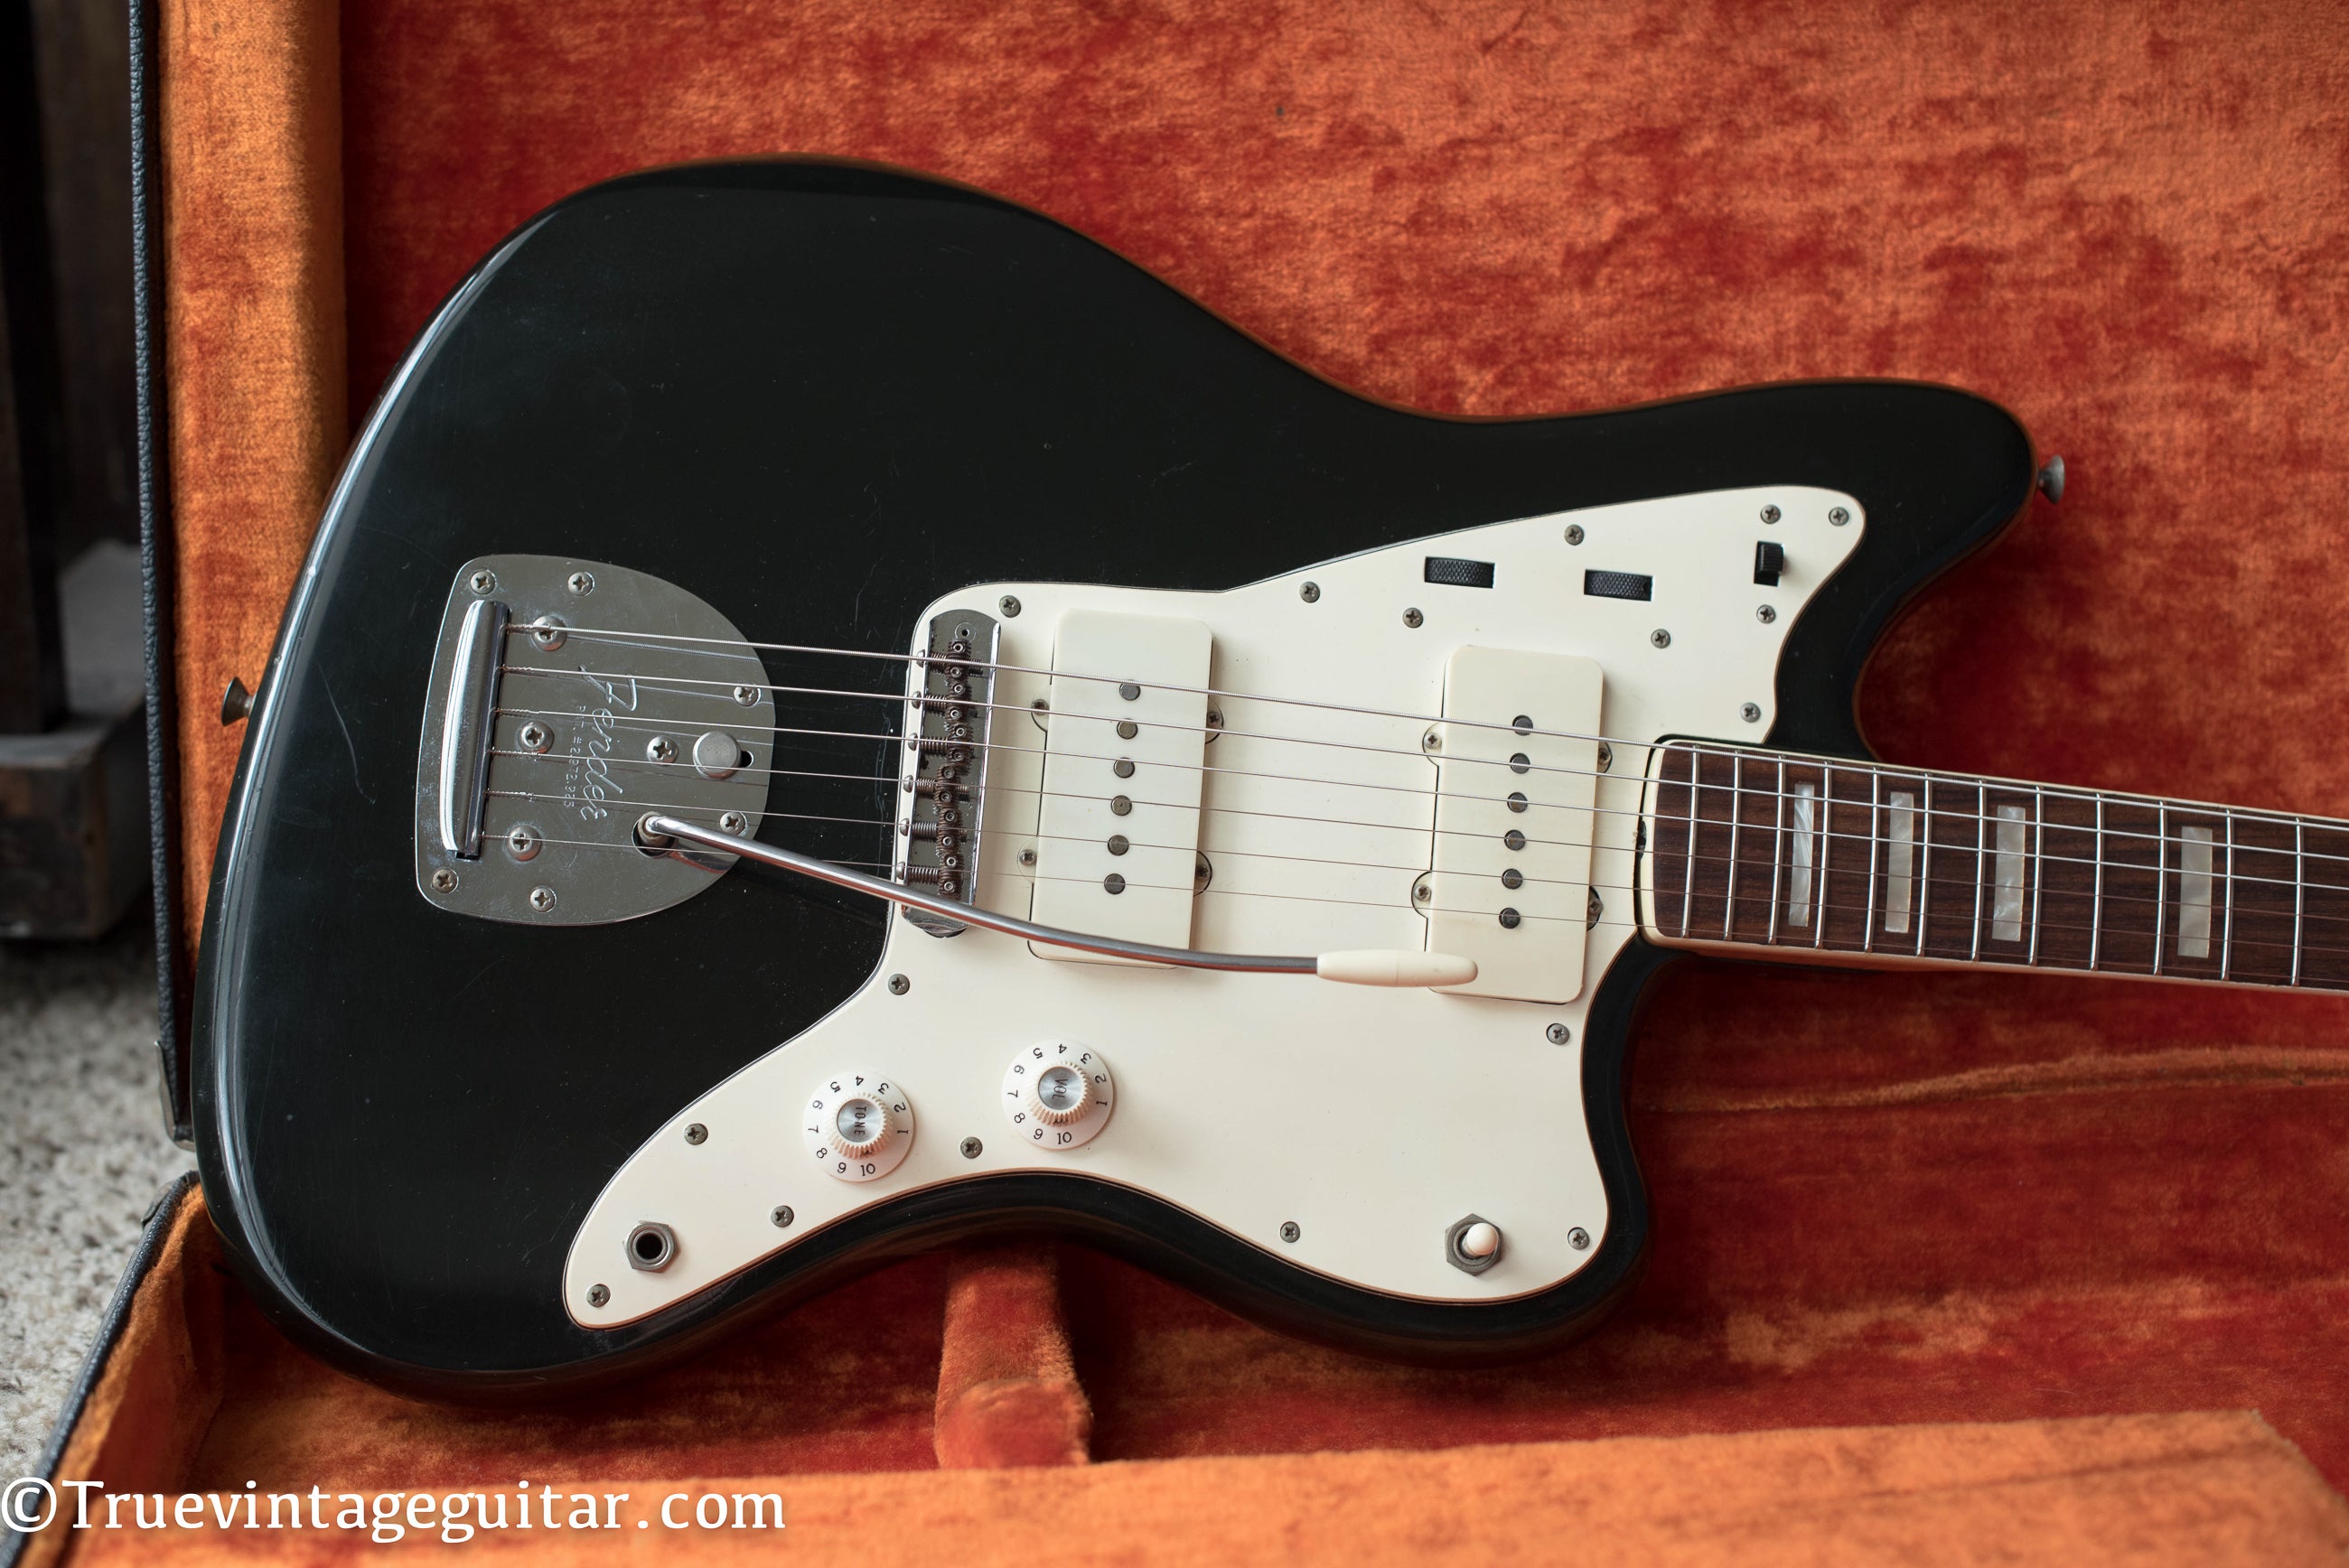 Vintage Fender Jazzmaster Black guitar